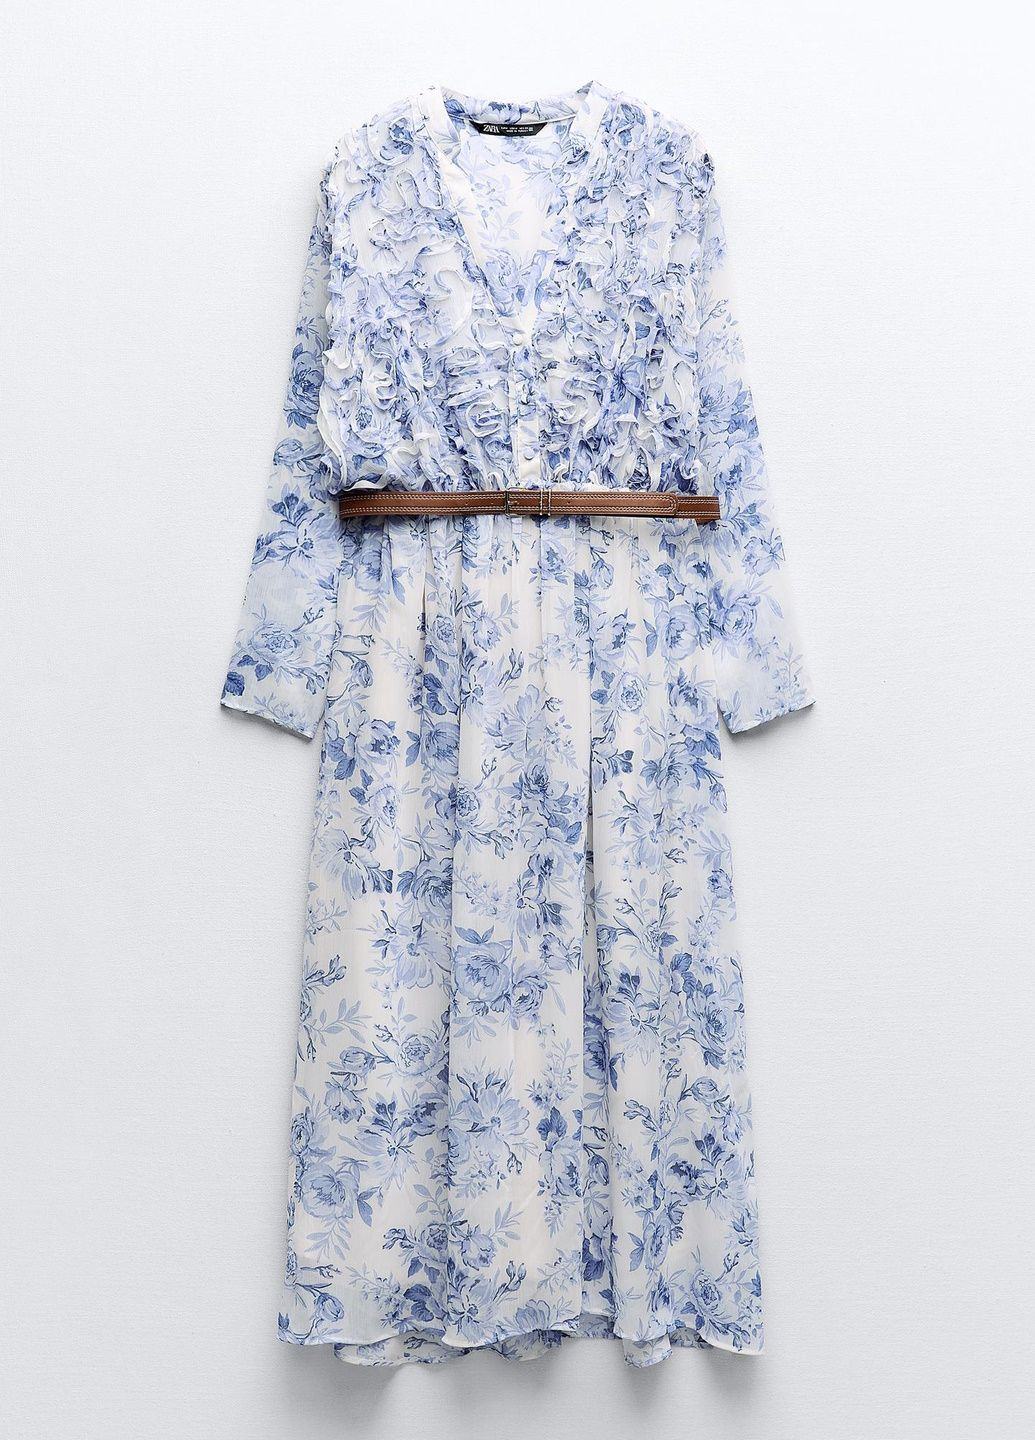 Синее праздничный платье Zara с цветочным принтом